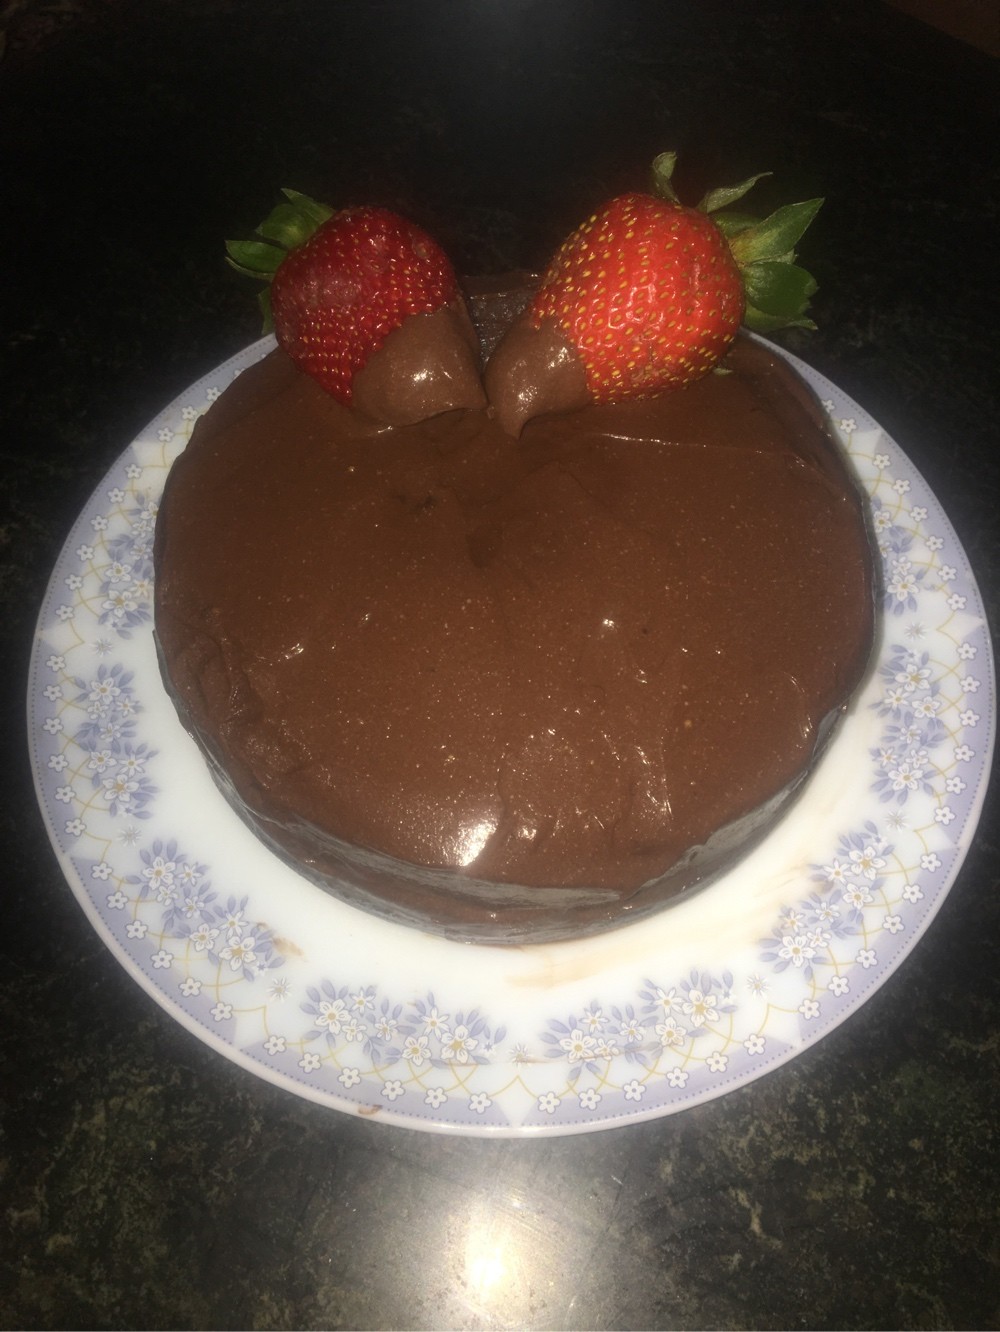 عکس کیک شکلاتی با رویه سس شکلات برای عالیجناب عشق?